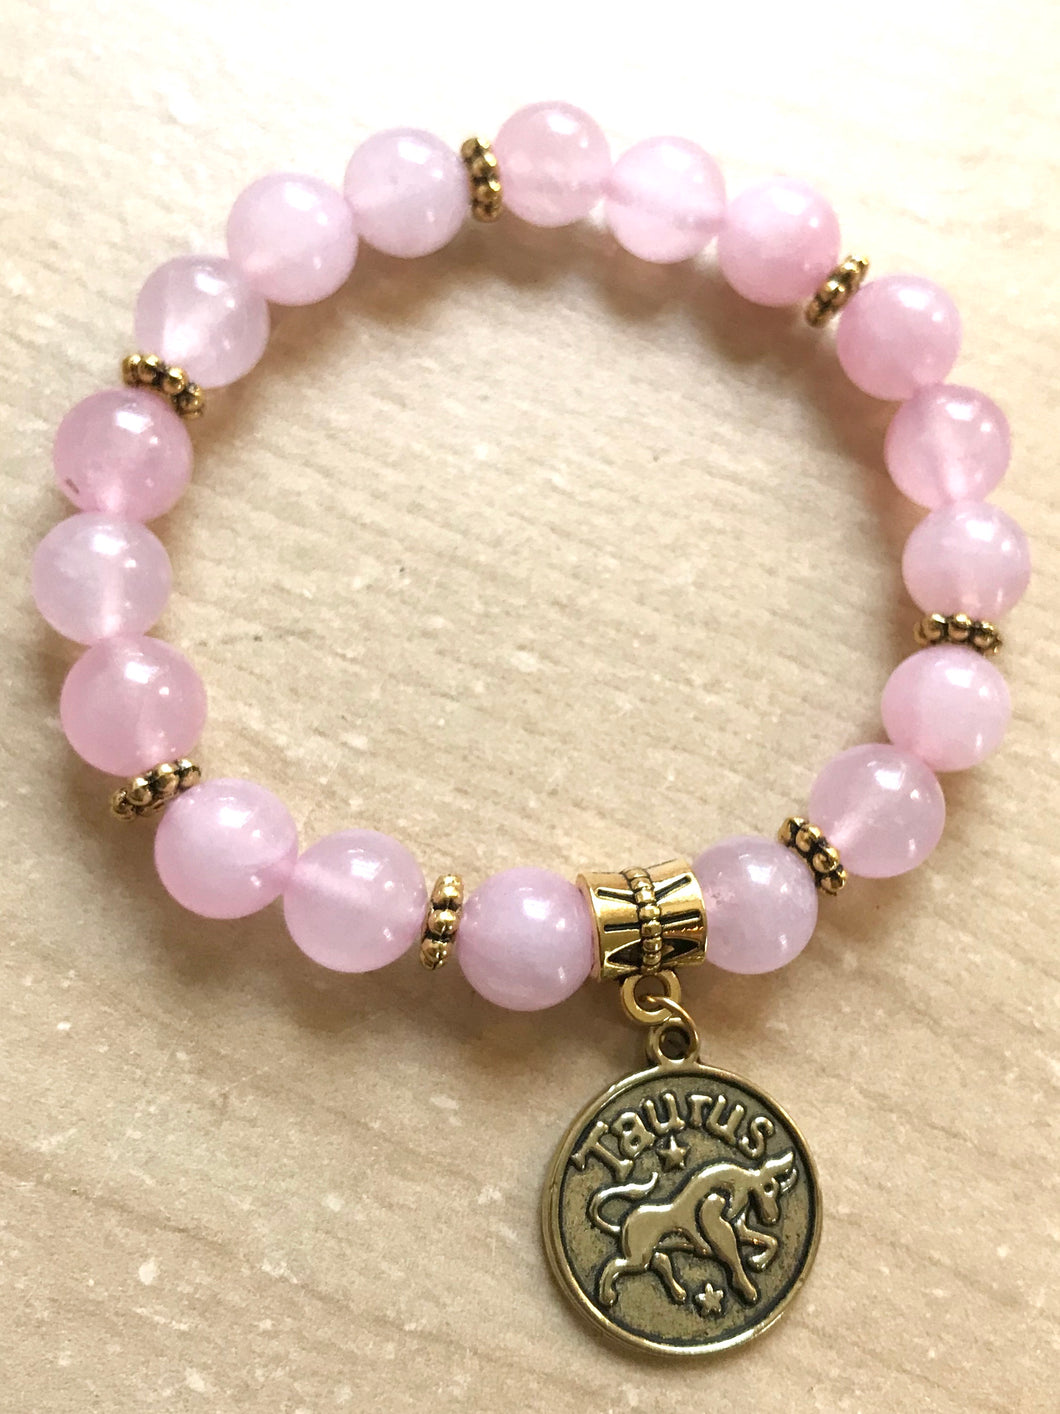 6.75” Taurus Love Bracelet - rose quartz